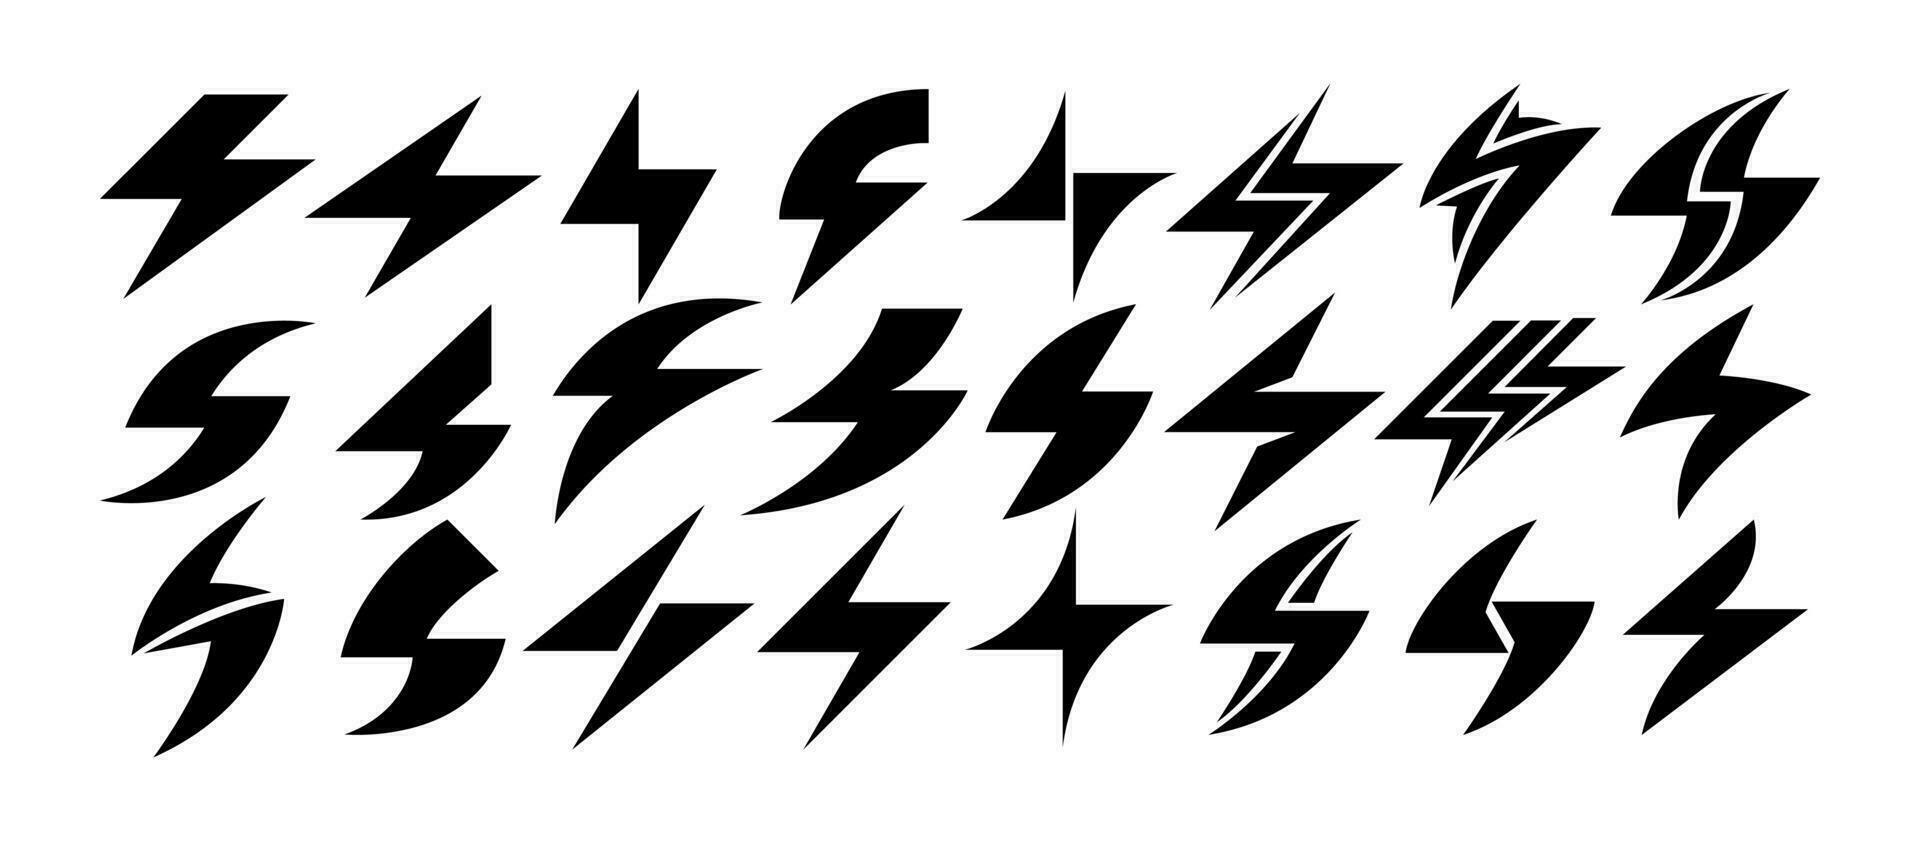 einfach abstrakt elektrisch Leistung Blitz Symbol Design einstellen vektor